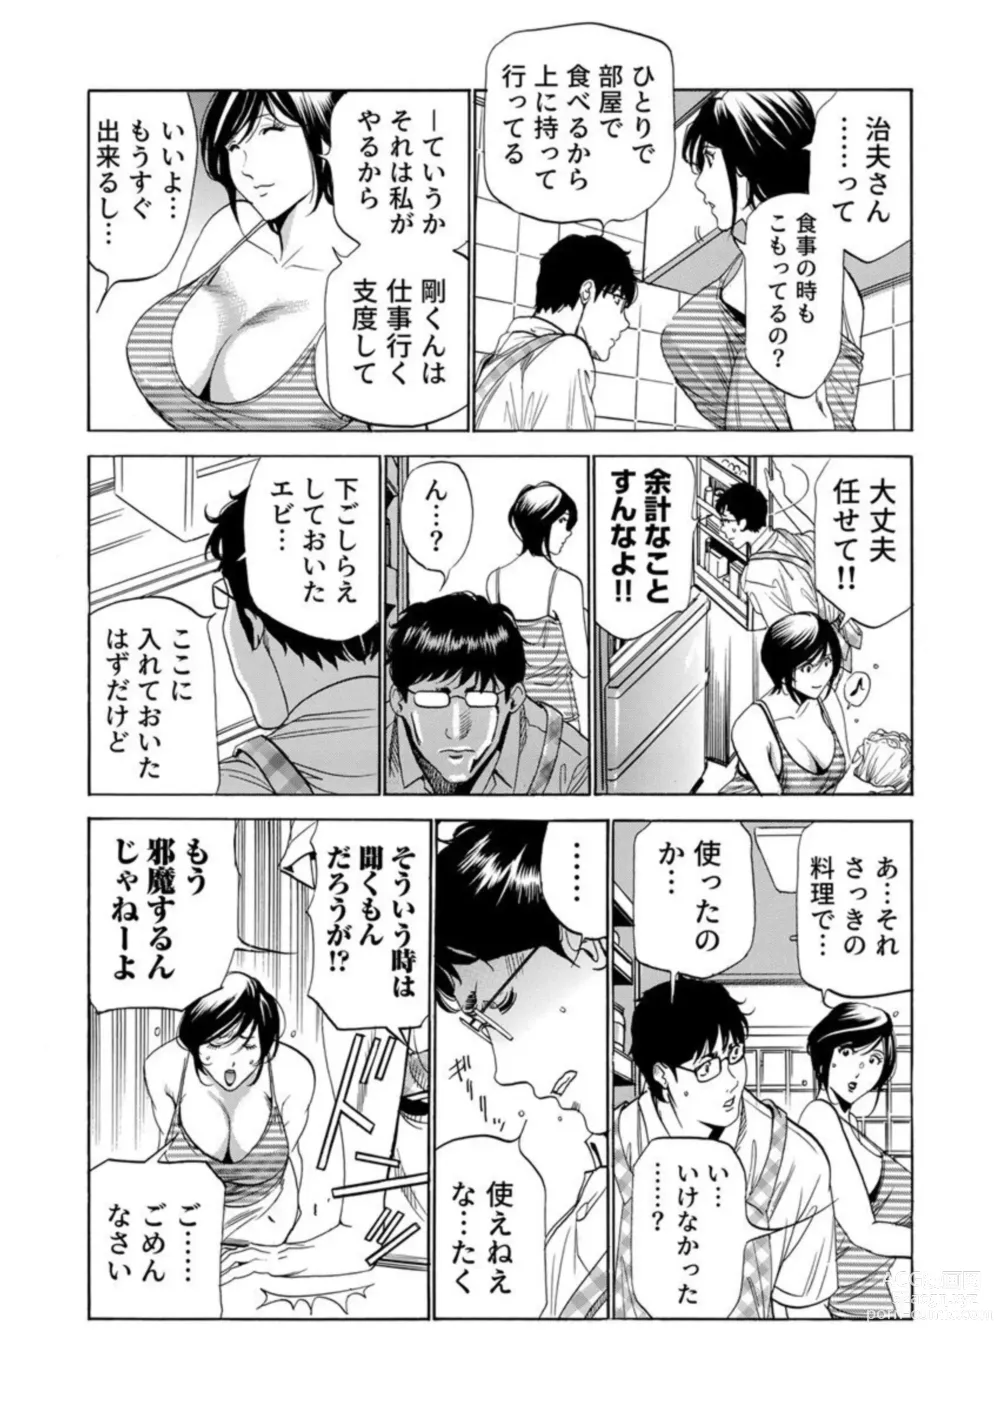 Page 9 of manga Totsugisaki wa Tsureko ga 9 nin!? Gibo, Musukotachi to no sei Kankei ni Nayamu 2